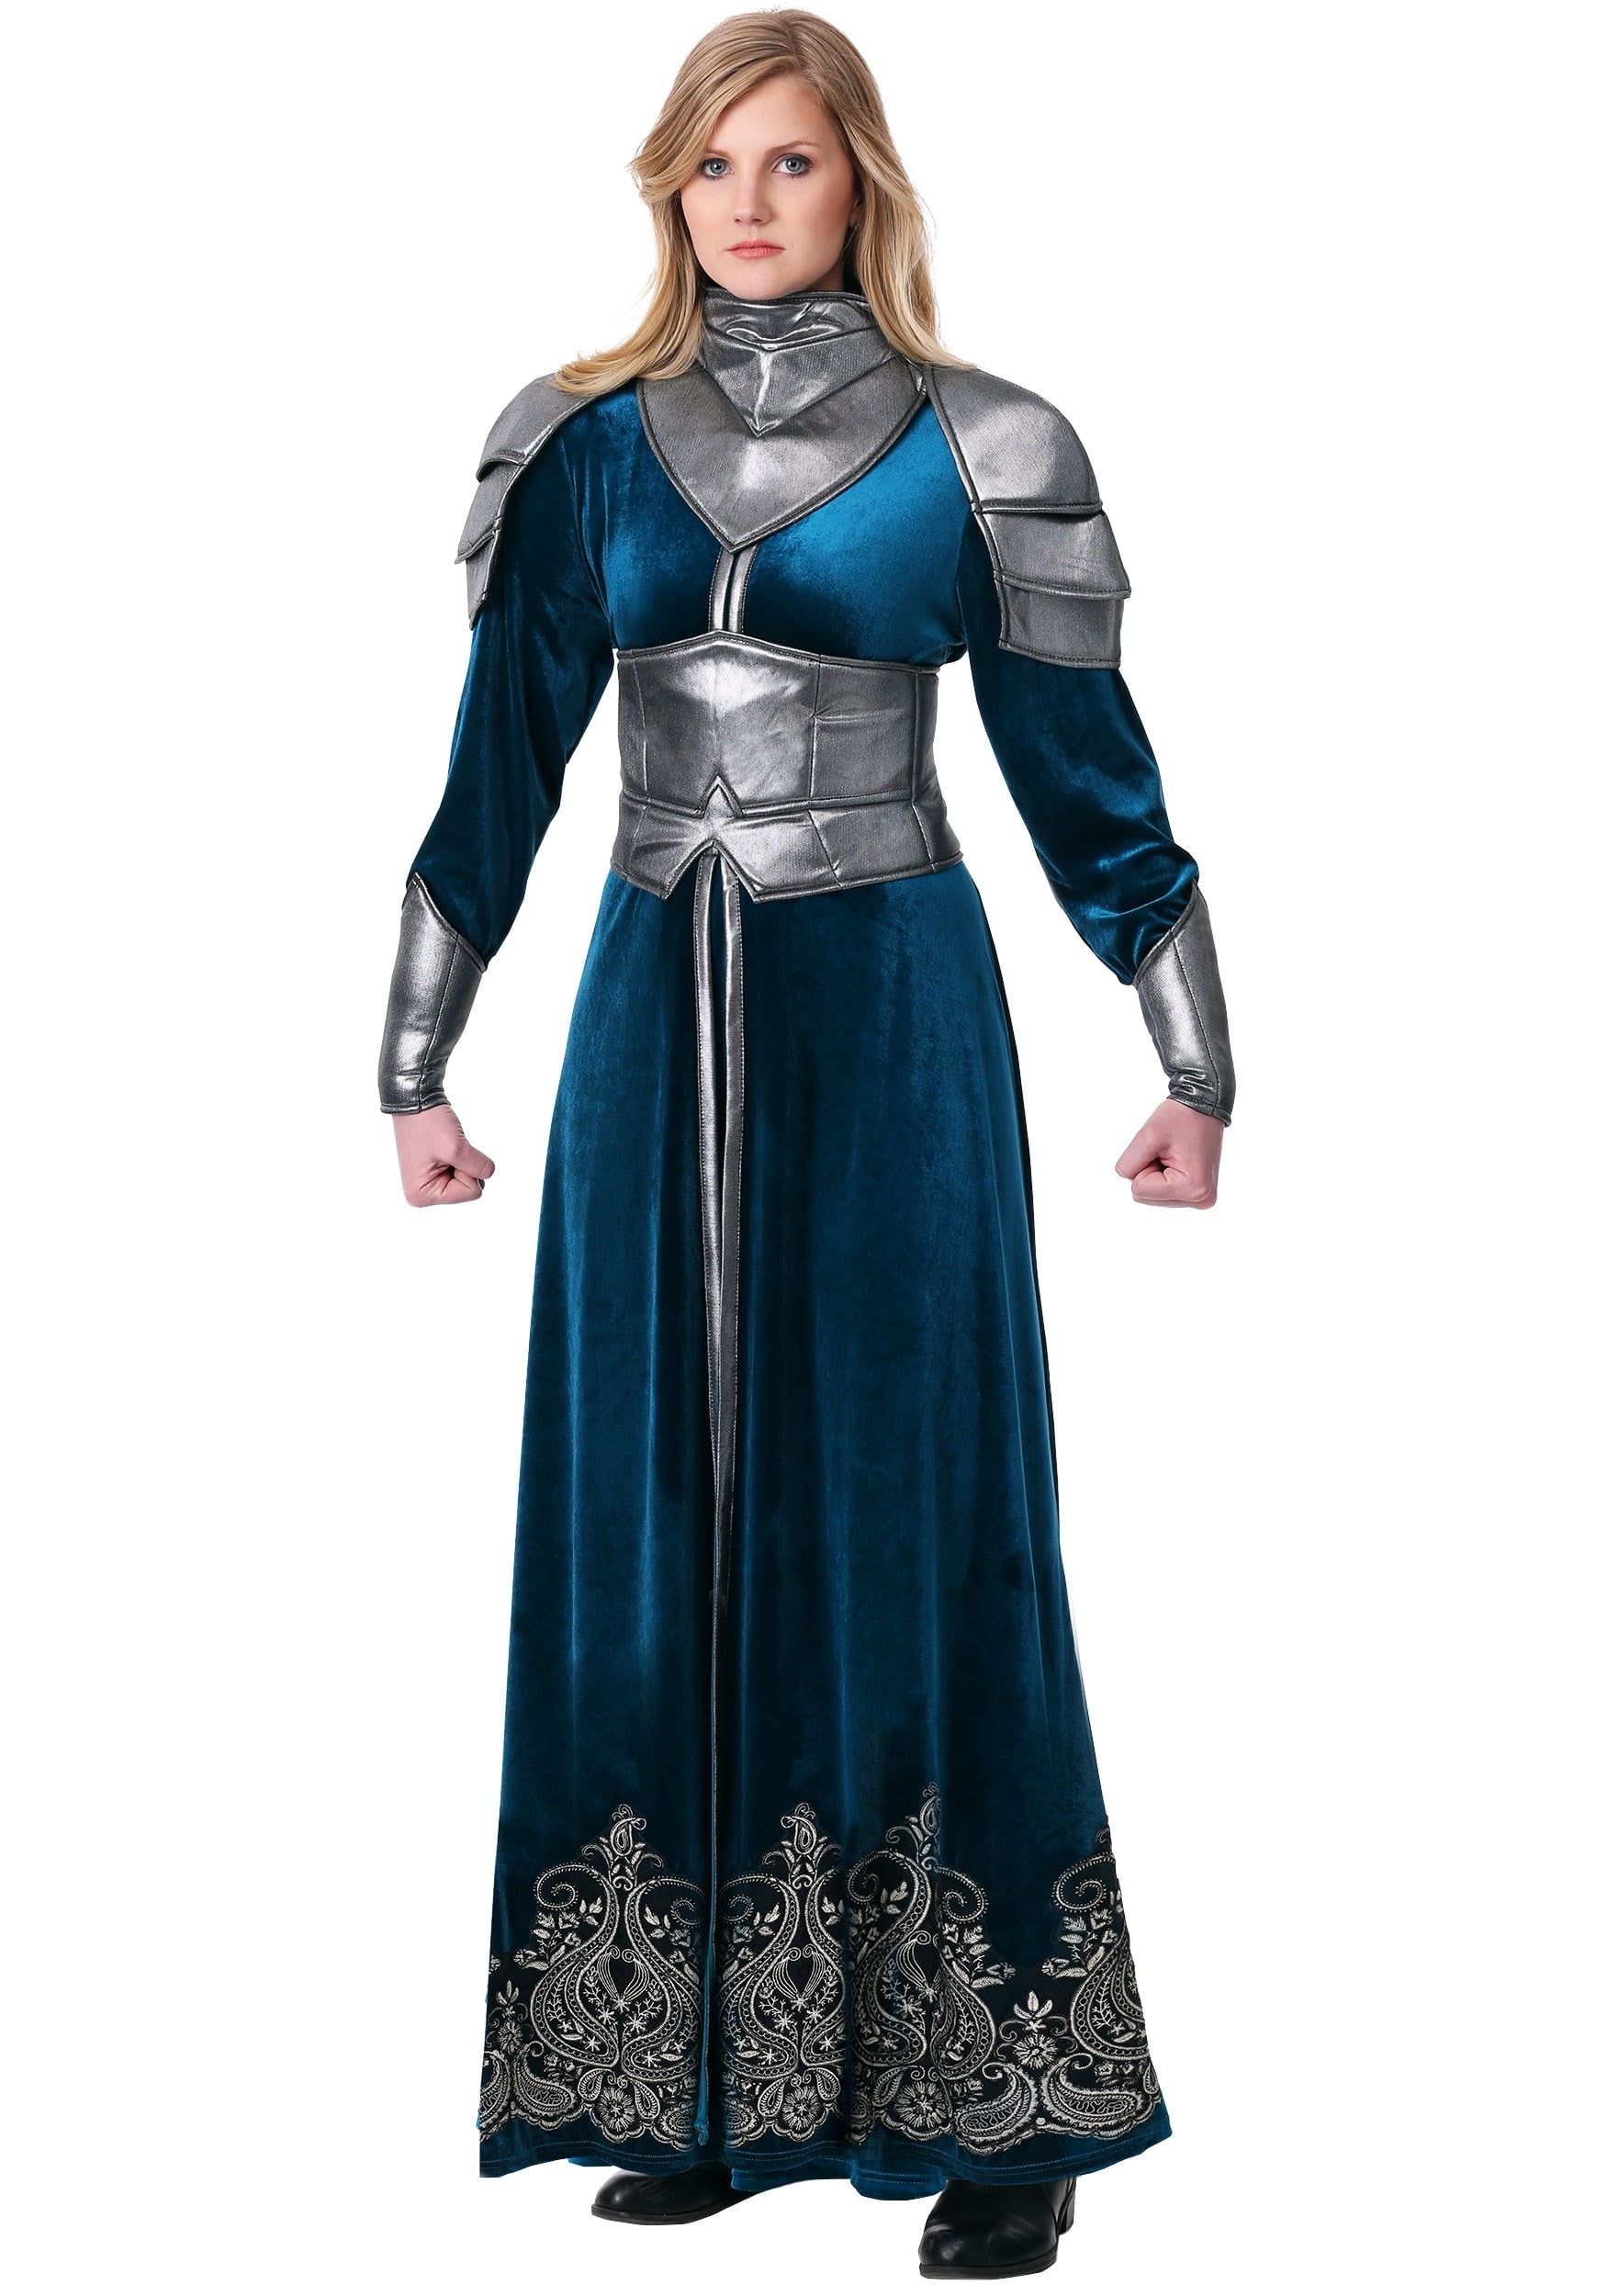 Women's Medieval Warrior Costume - Walmart.com